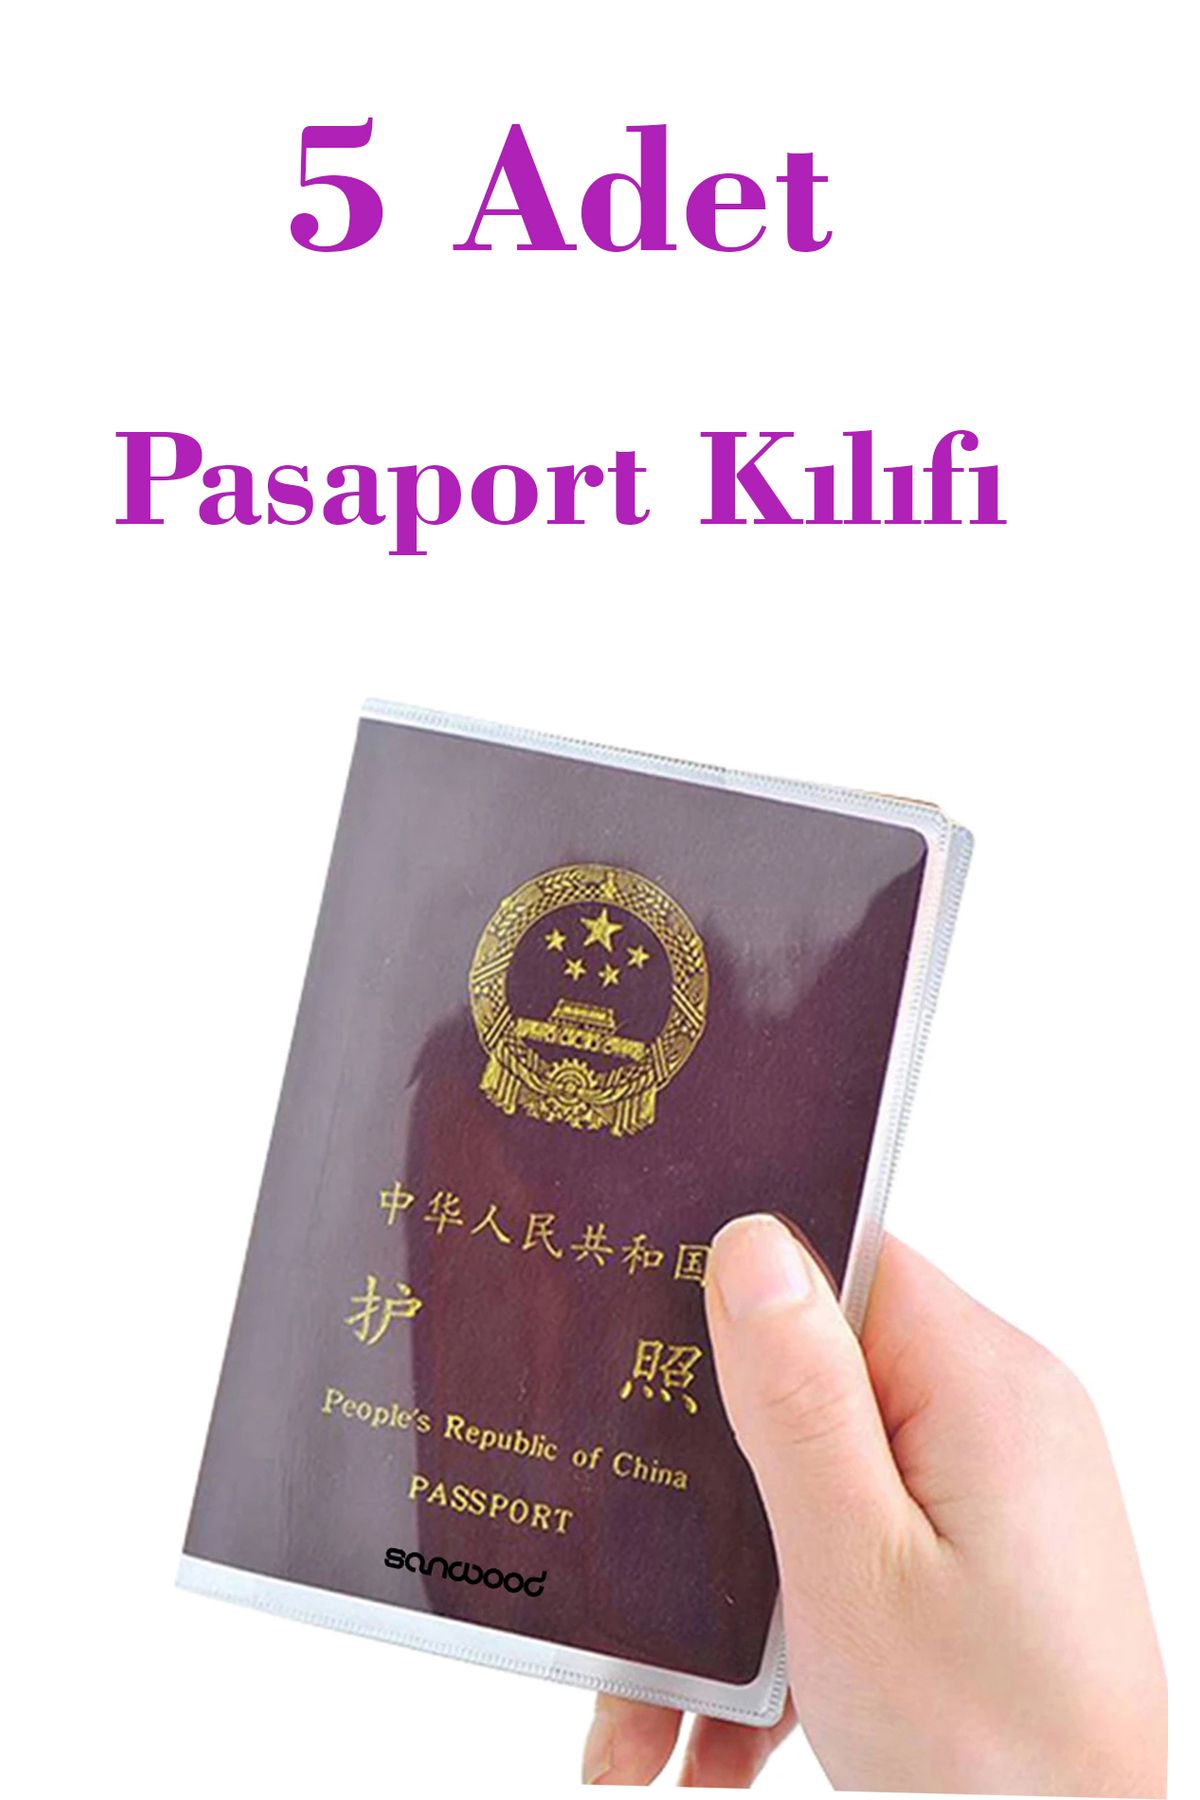 İPAX 5 Adet Şeffaf Pasaport Kılıfı Pasaport Koruma Kabı Pasaport Cüzdanı Pasaportluk Her Pasaporta Uygun